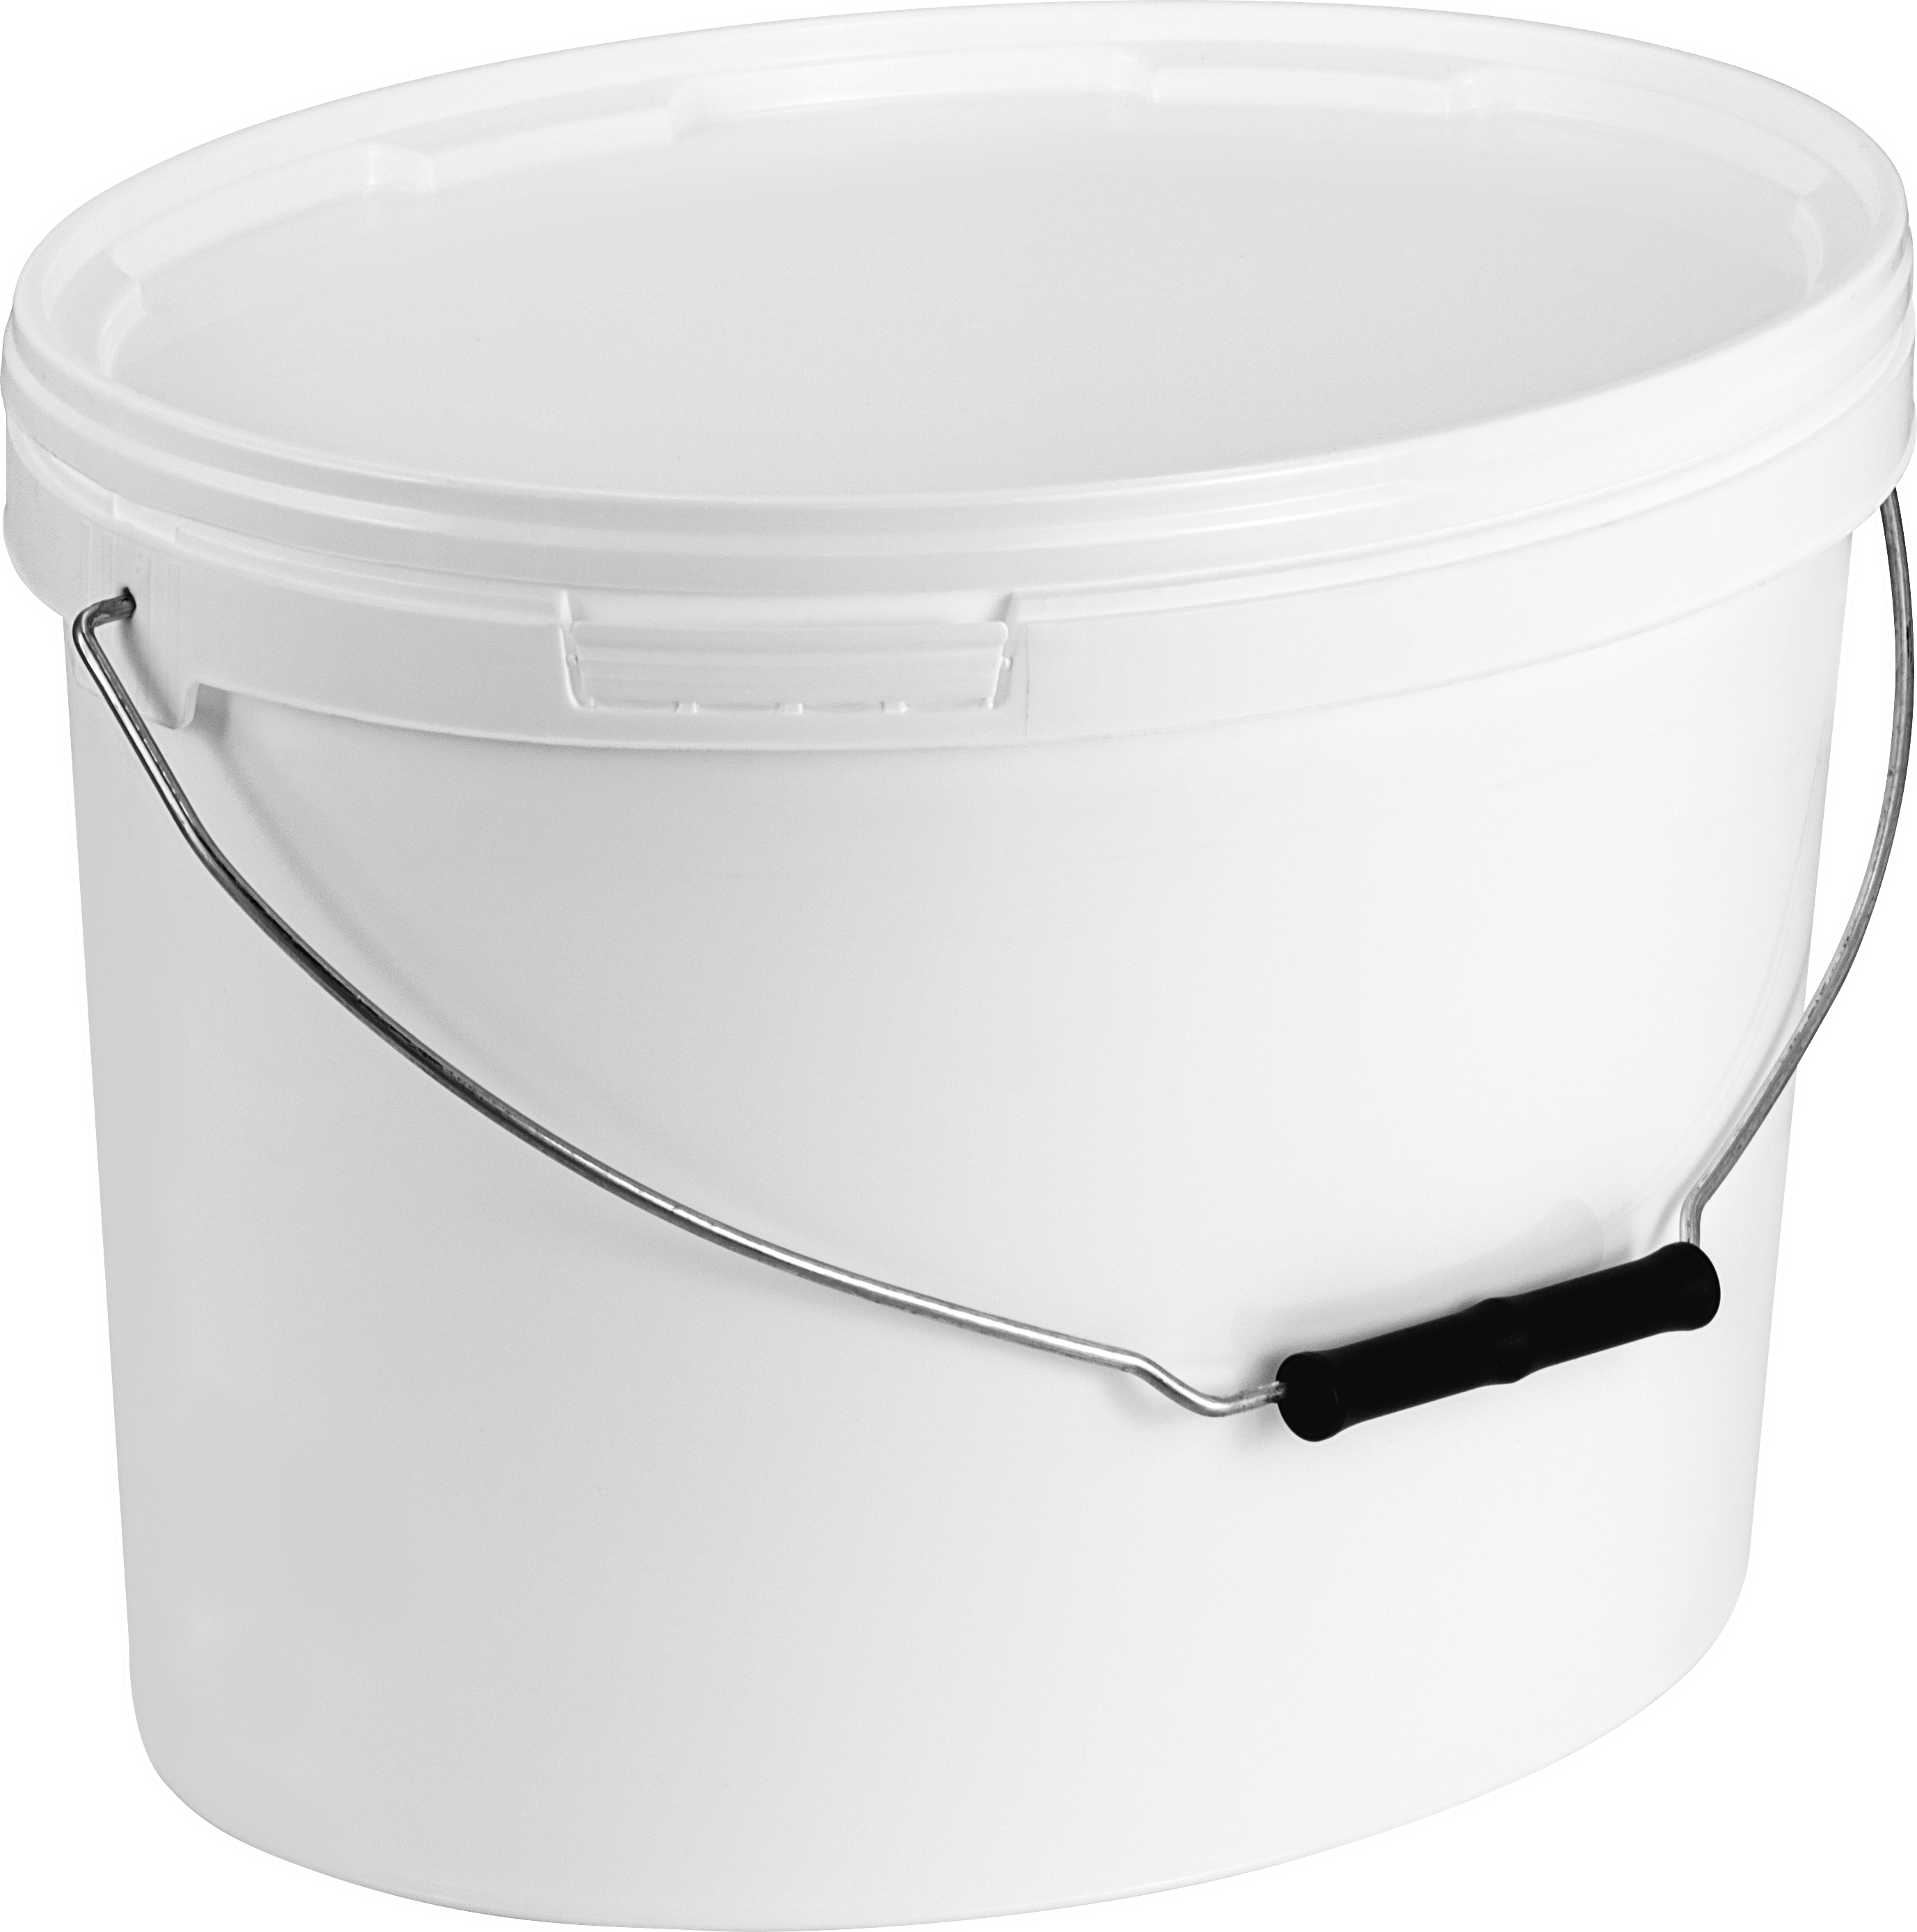 Oval bucket  11-1200 OV1 